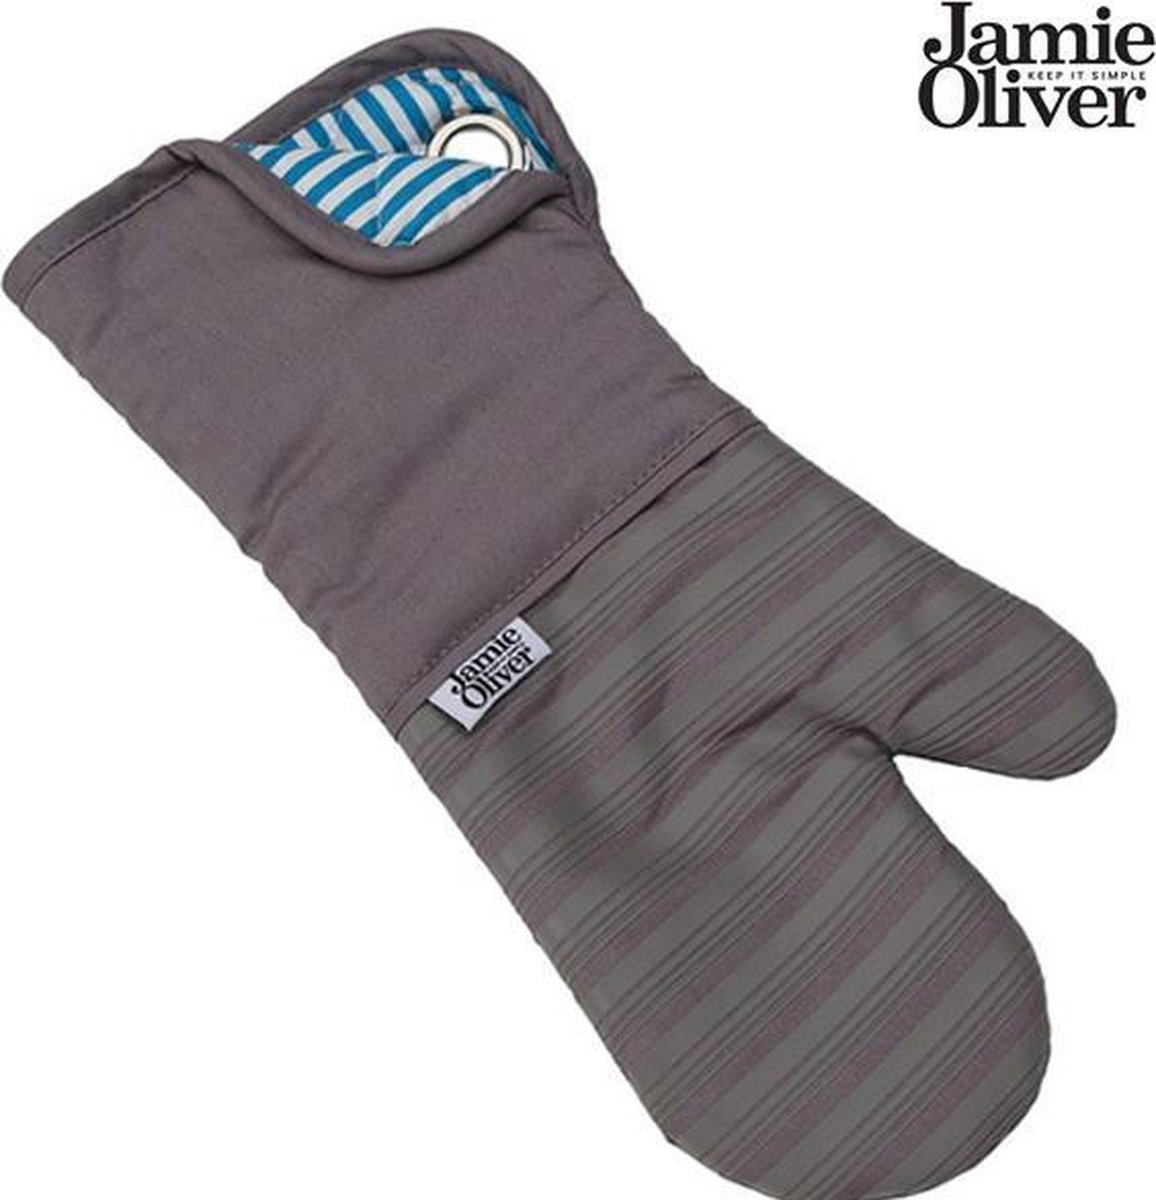 weer gewicht Belonend Jamie Oliver ovenwant - Oven handschoen - Anti-slip - Antraciet / Grijs |  bol.com